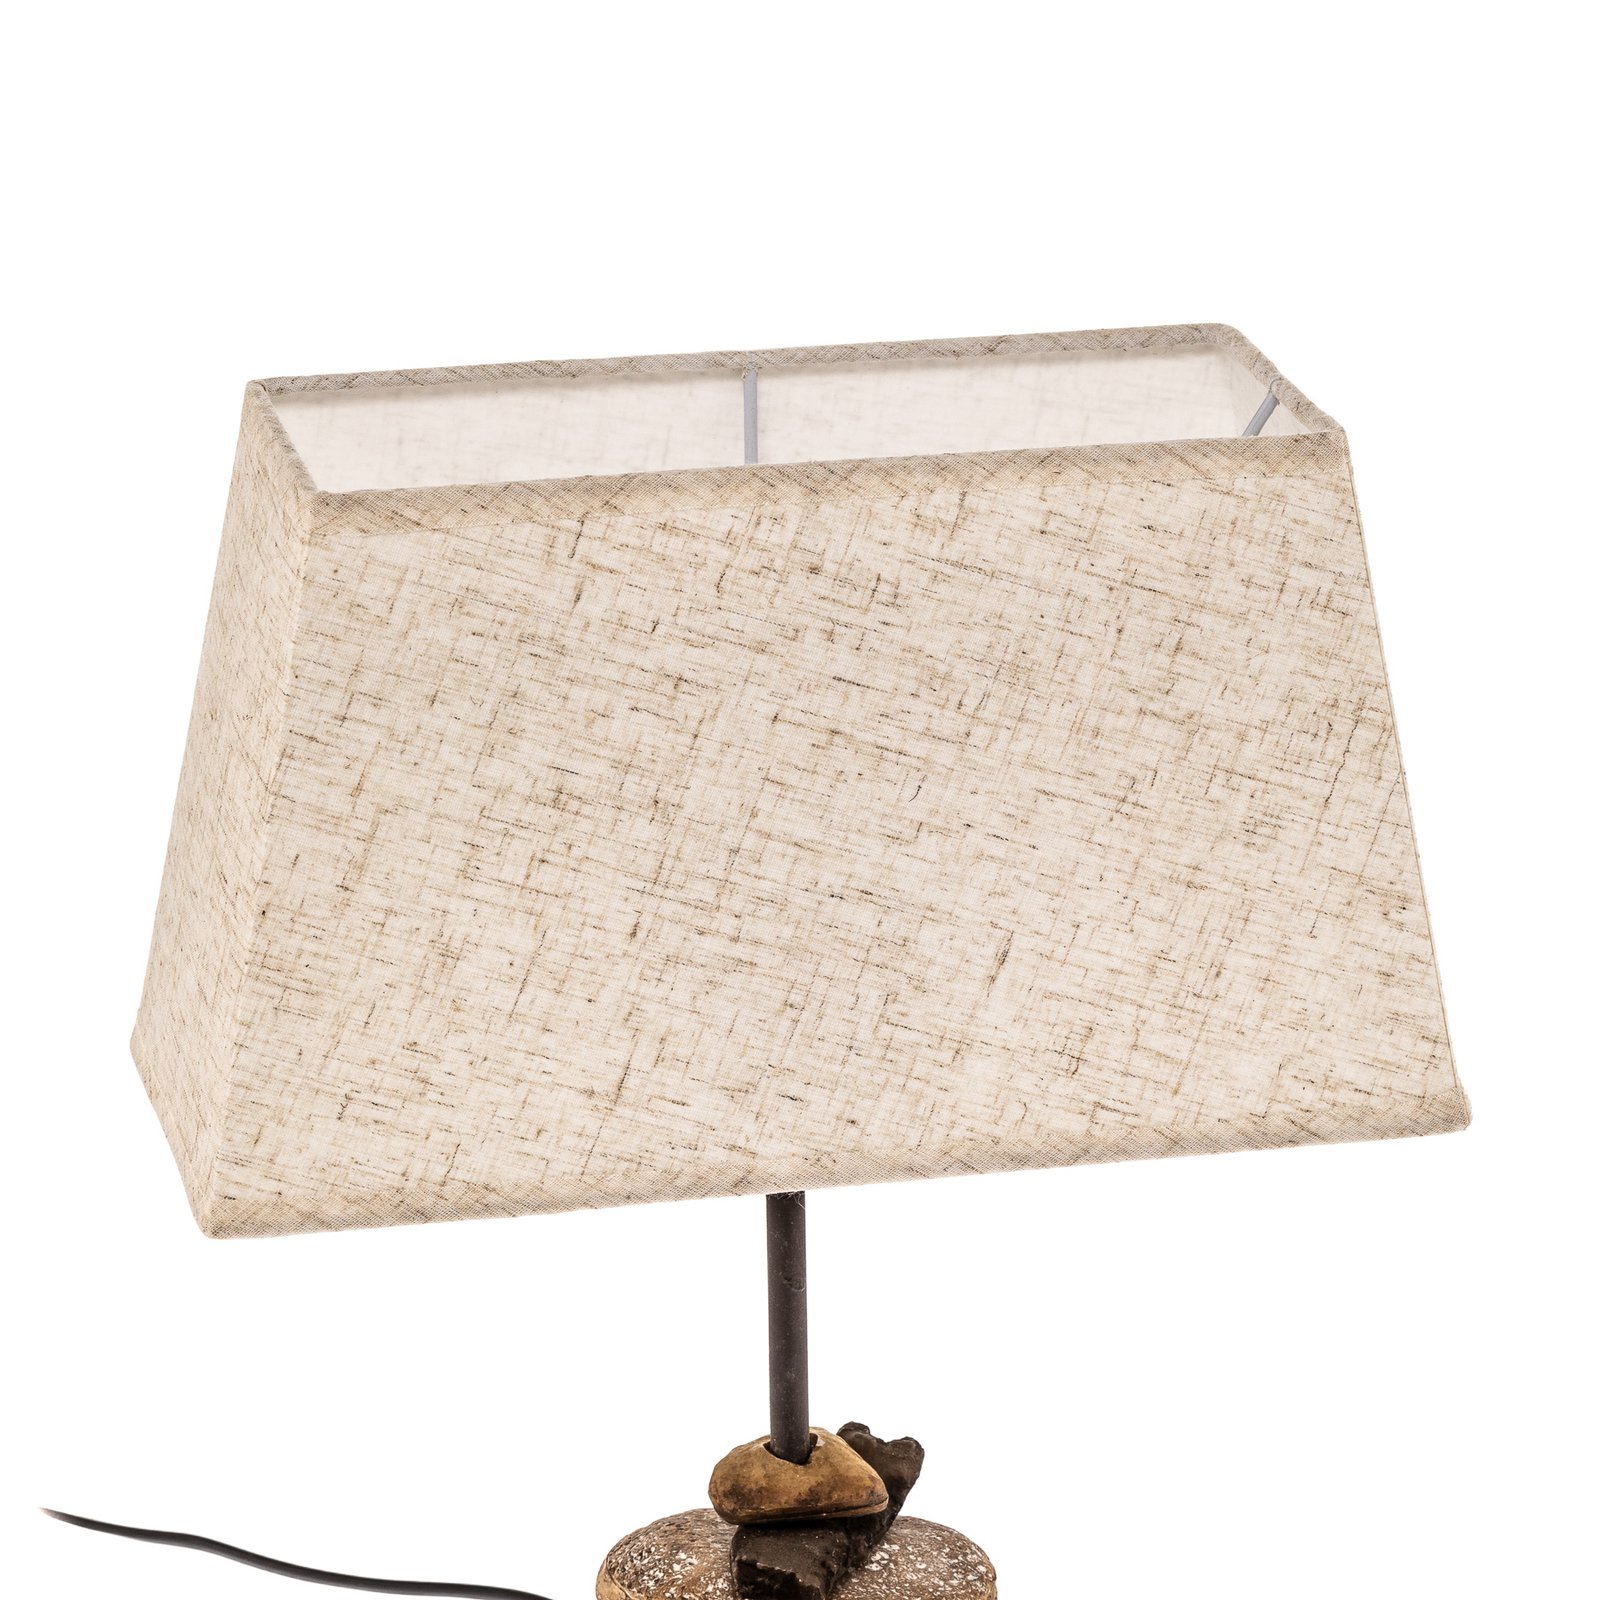 Seregon bordlampe med stoffskjerm, høyde 39 cm